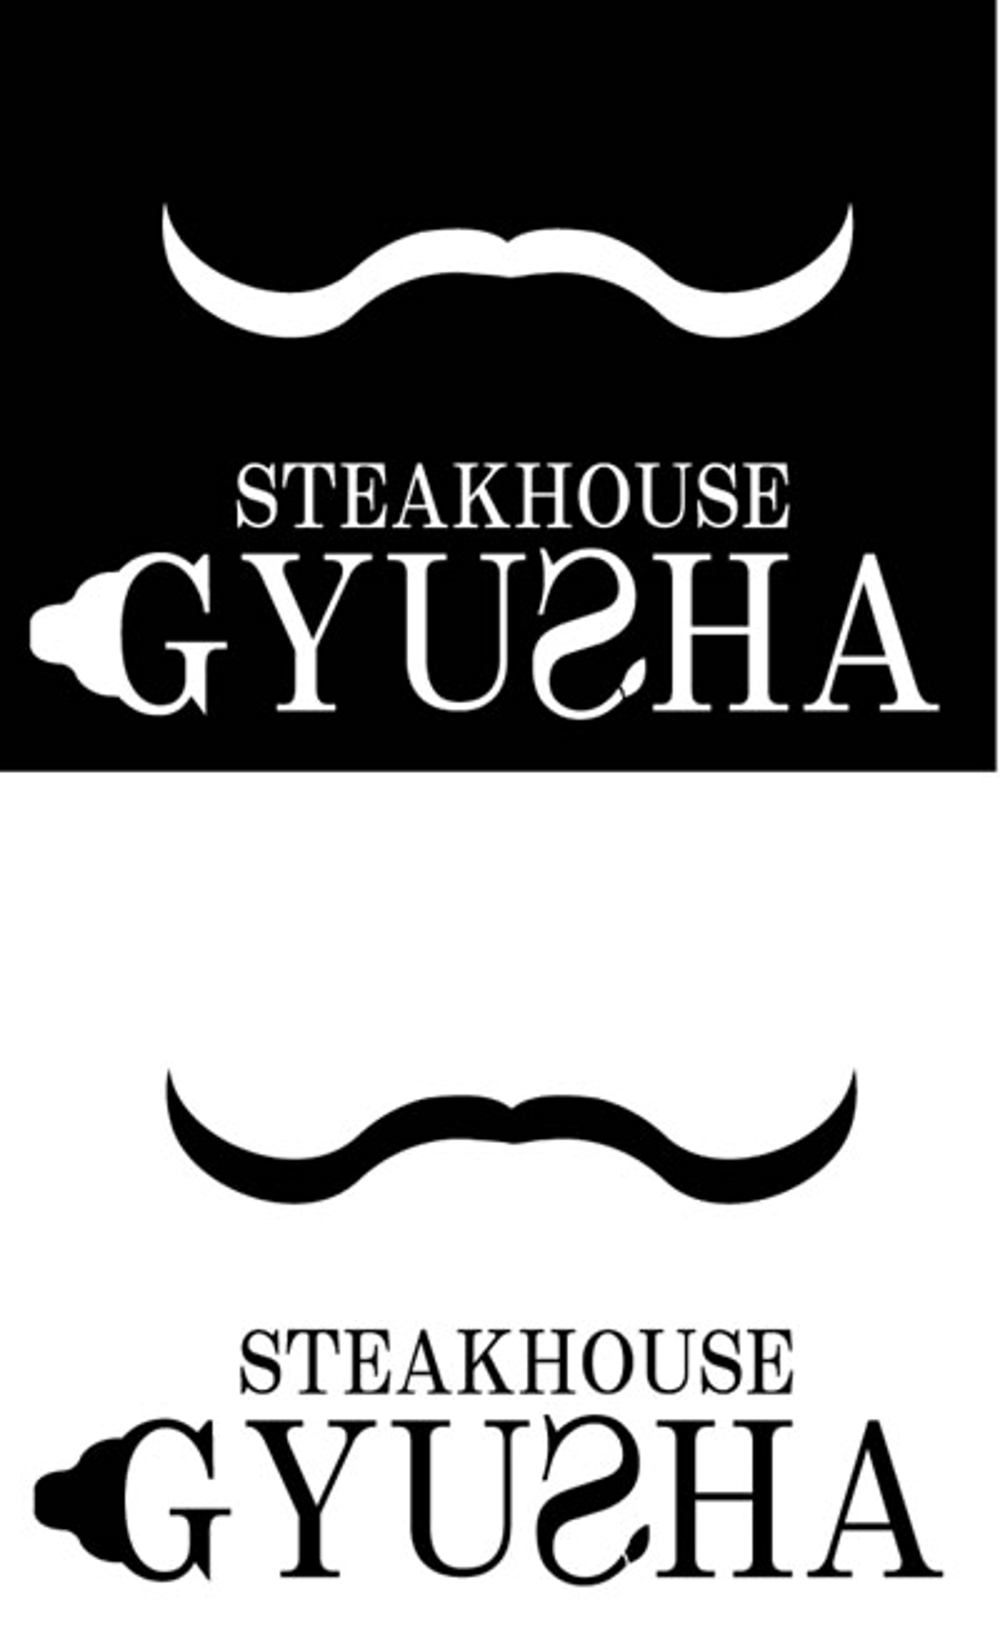 ステーキハウスのロゴ作成